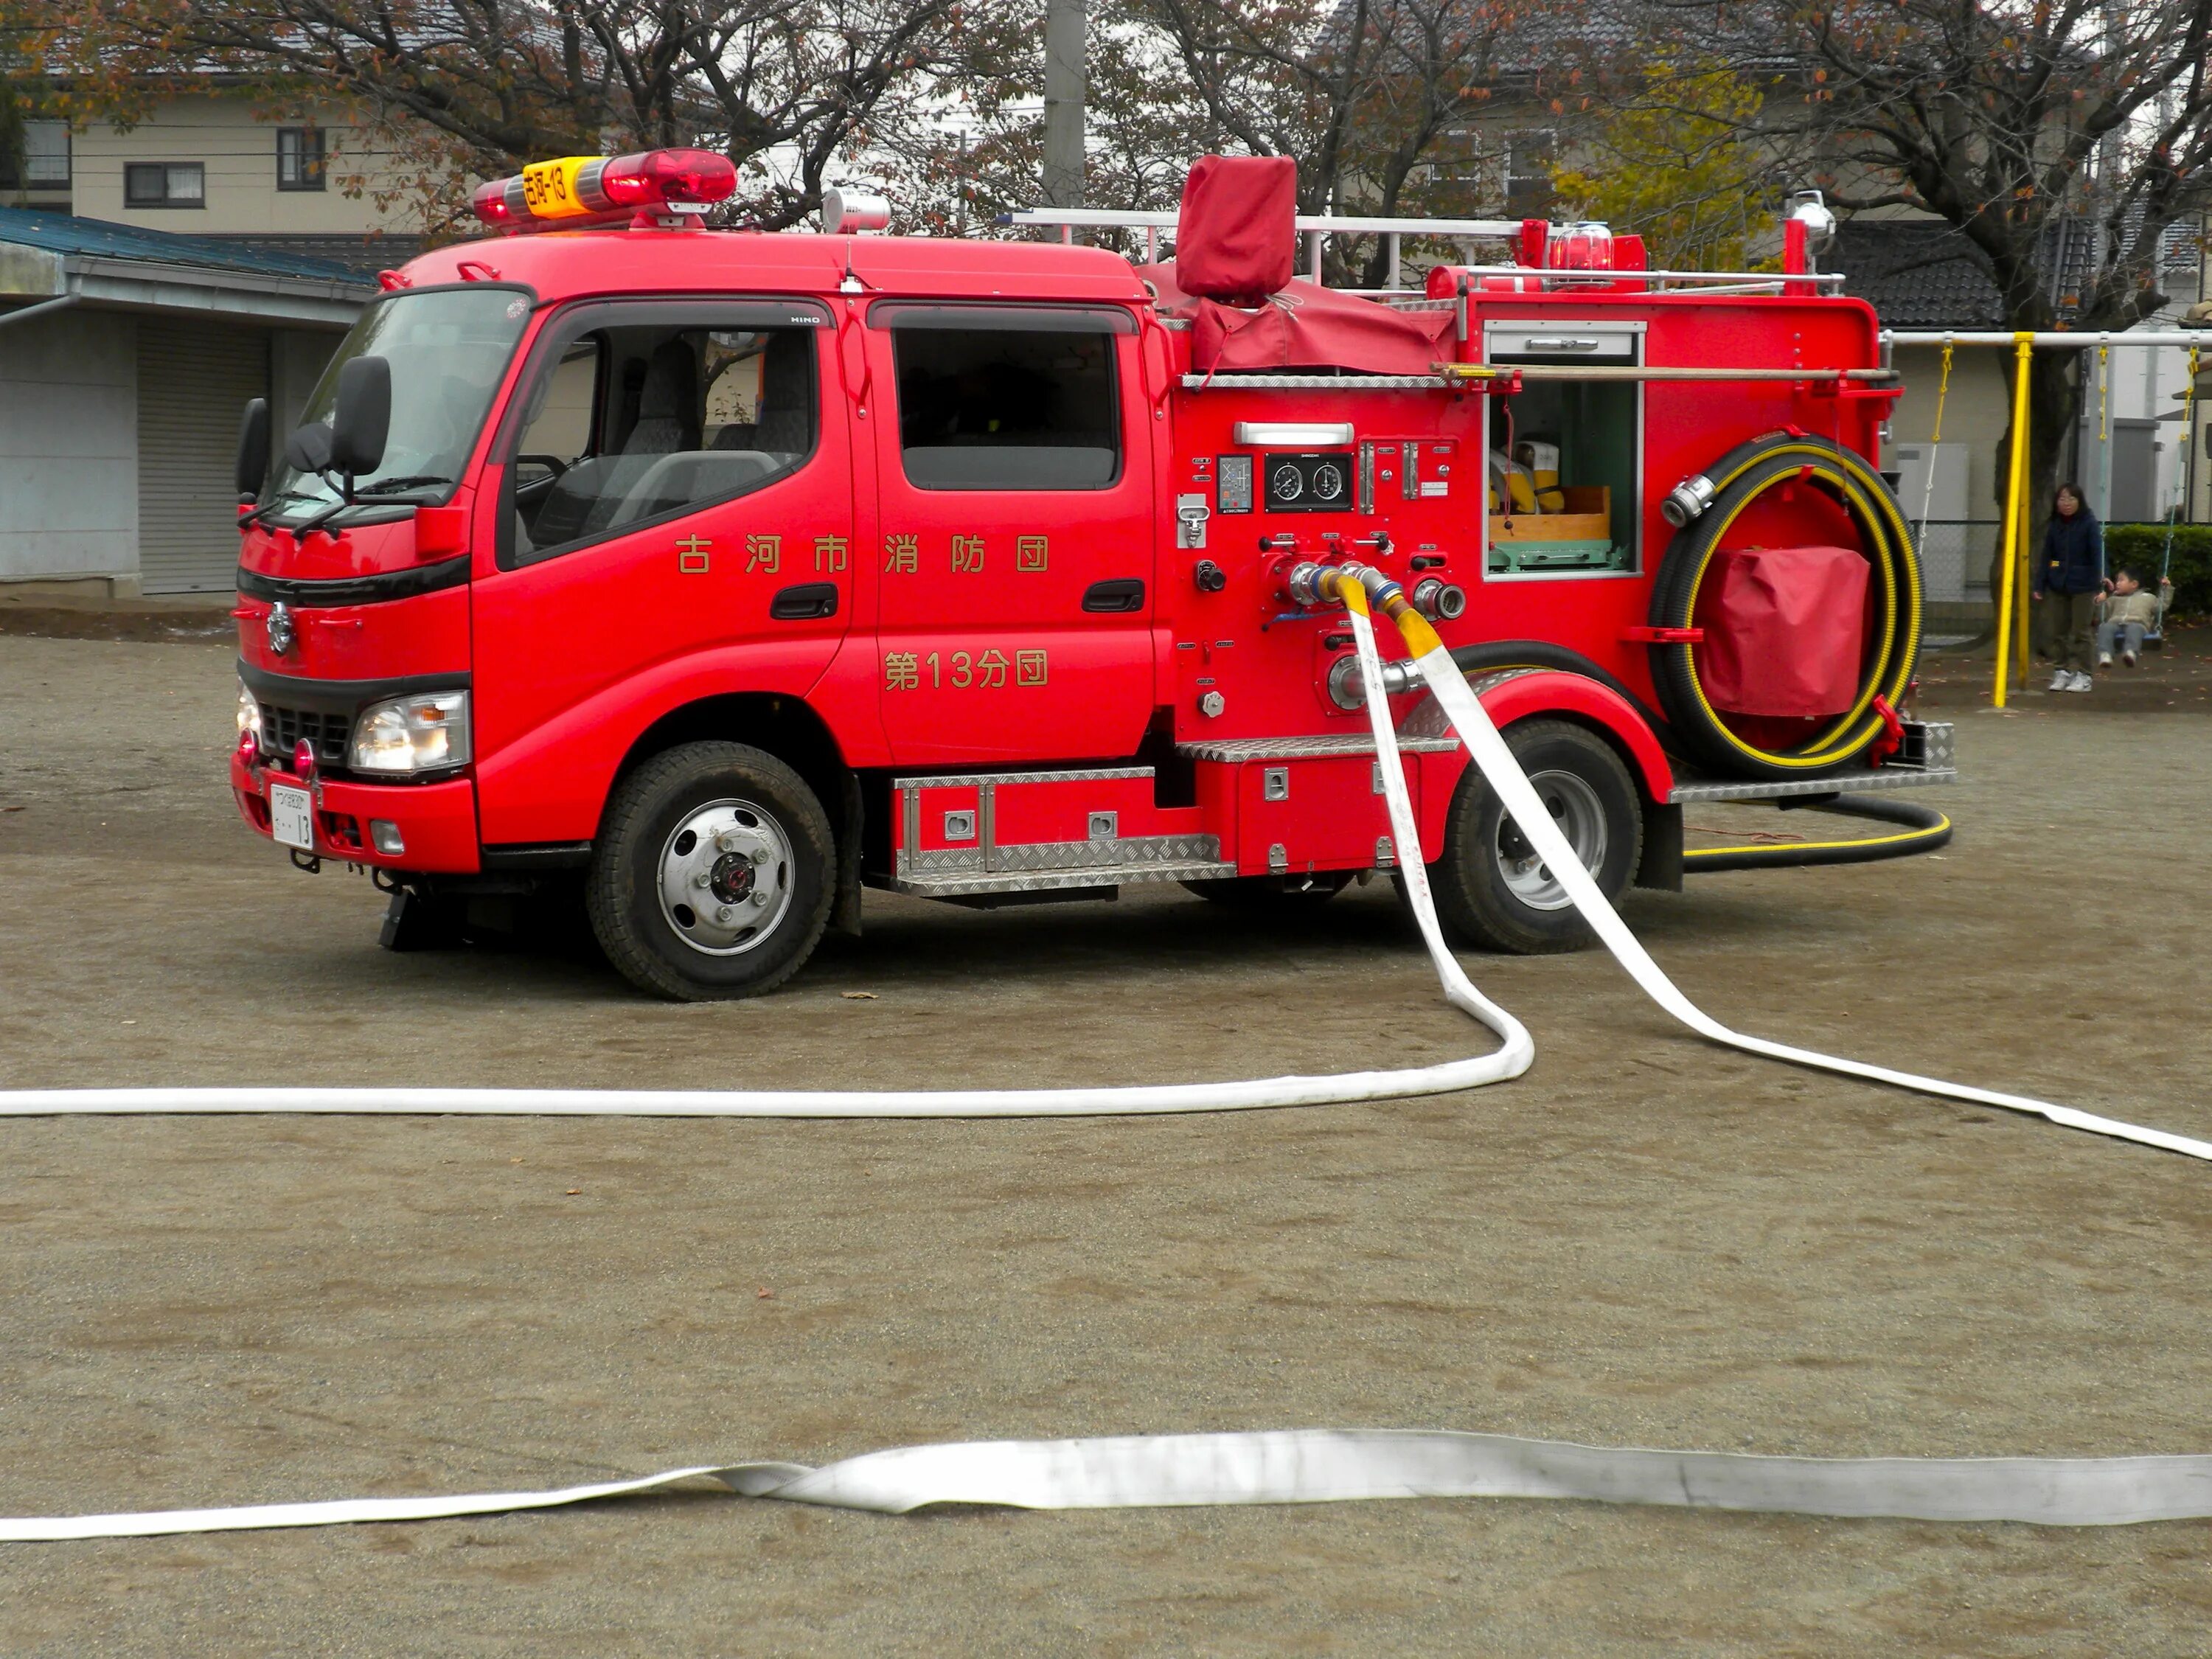 Пожарный автомобиль куплю. Машина "Fire Truck" пожарная, 49450. Пожарная машинка (20 см) Fire-Fighting vehicle bp738. Пожарная машина FAW 12. FMC пожарная машина.